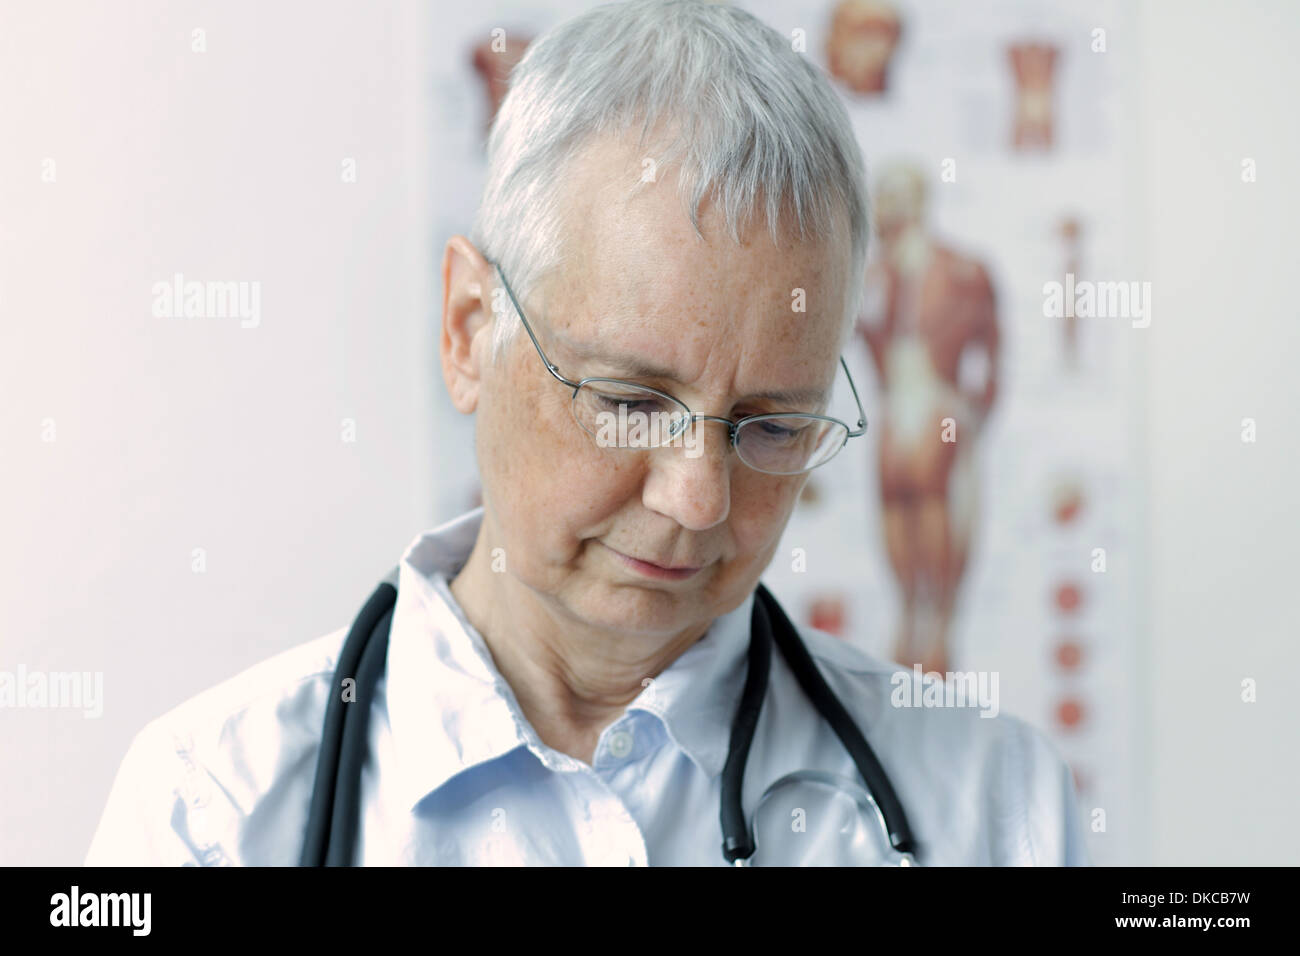 Una mujer reír doc con un músculo humano persona póster en el fondo Foto de stock